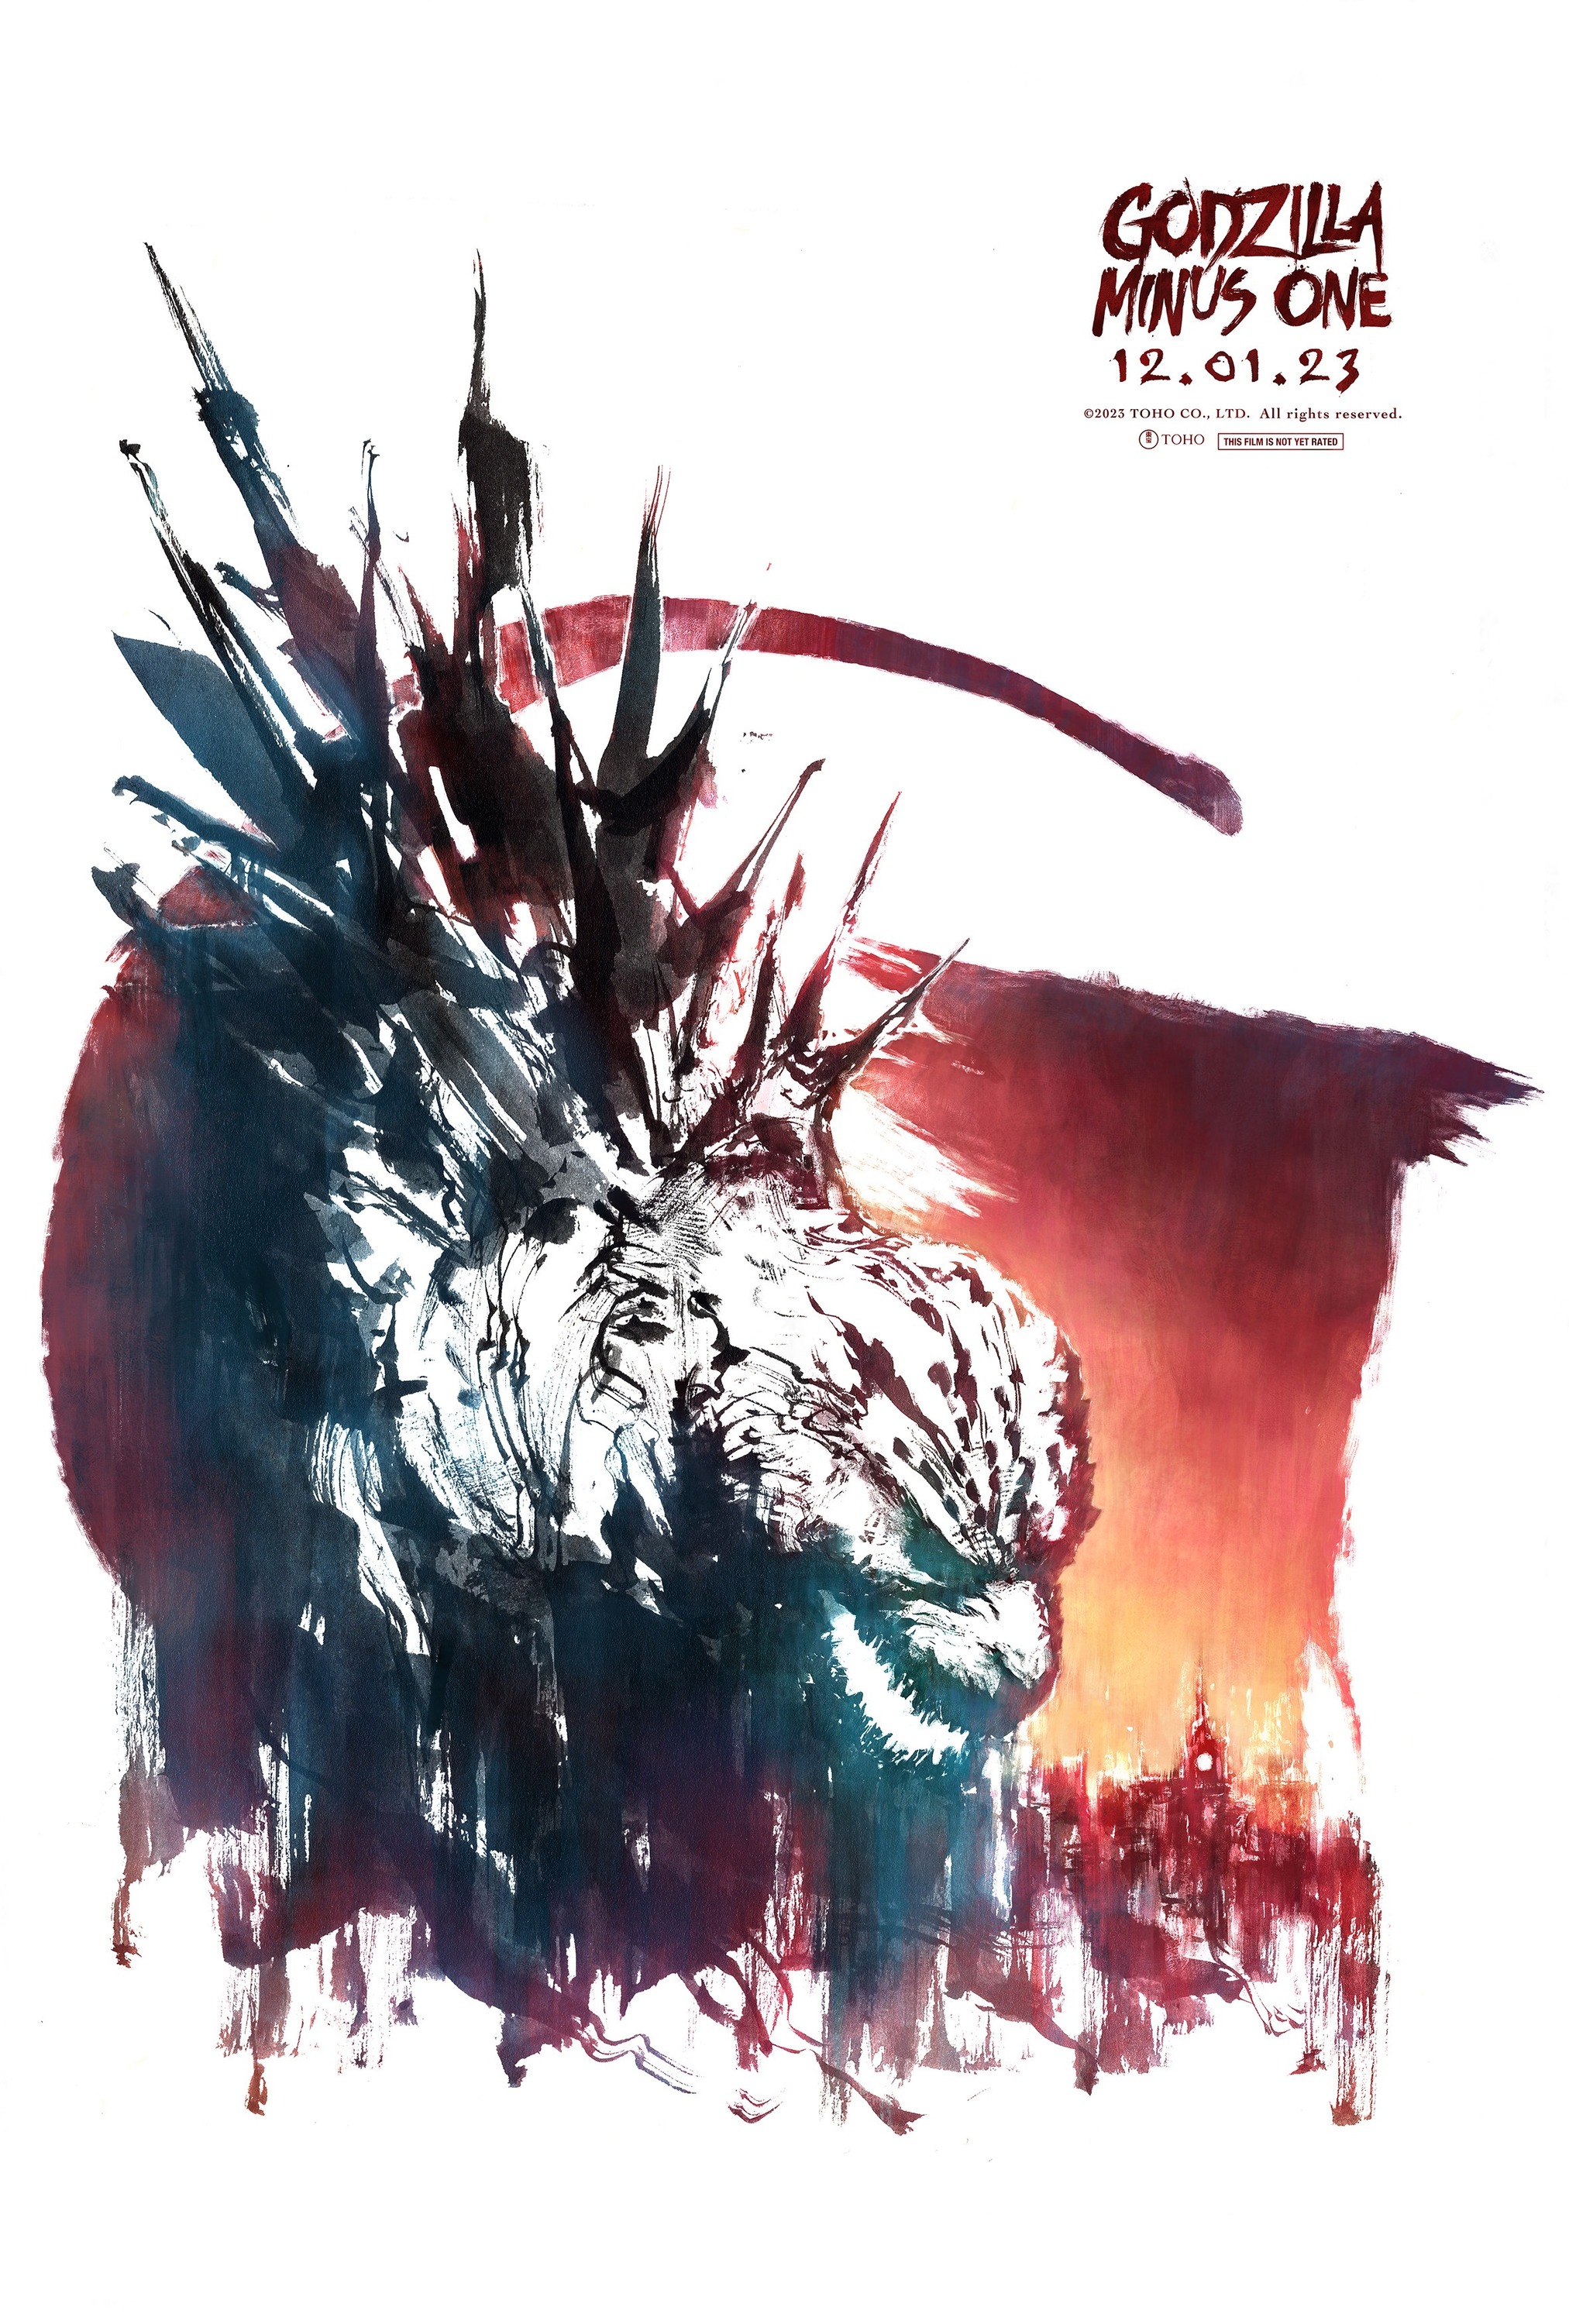 Mega Sized Movie Poster Image for Godzilla: Minus One (#3 of 11)